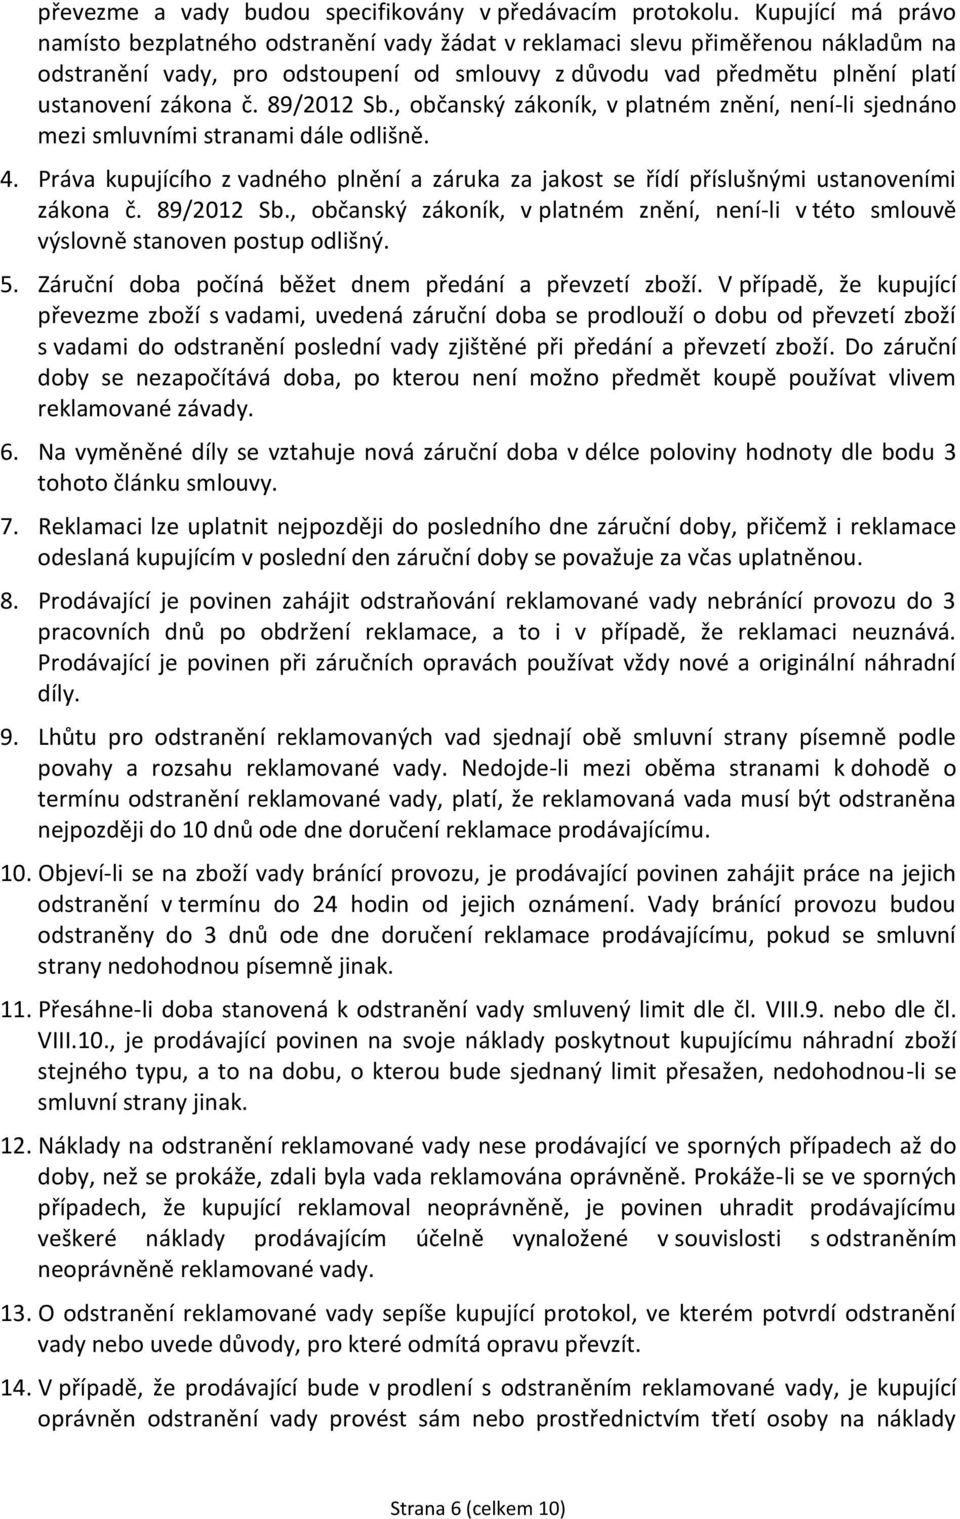 89/2012 Sb., občanský zákoník, v platném znění, není-li sjednáno mezi smluvními stranami dále odlišně. 4.